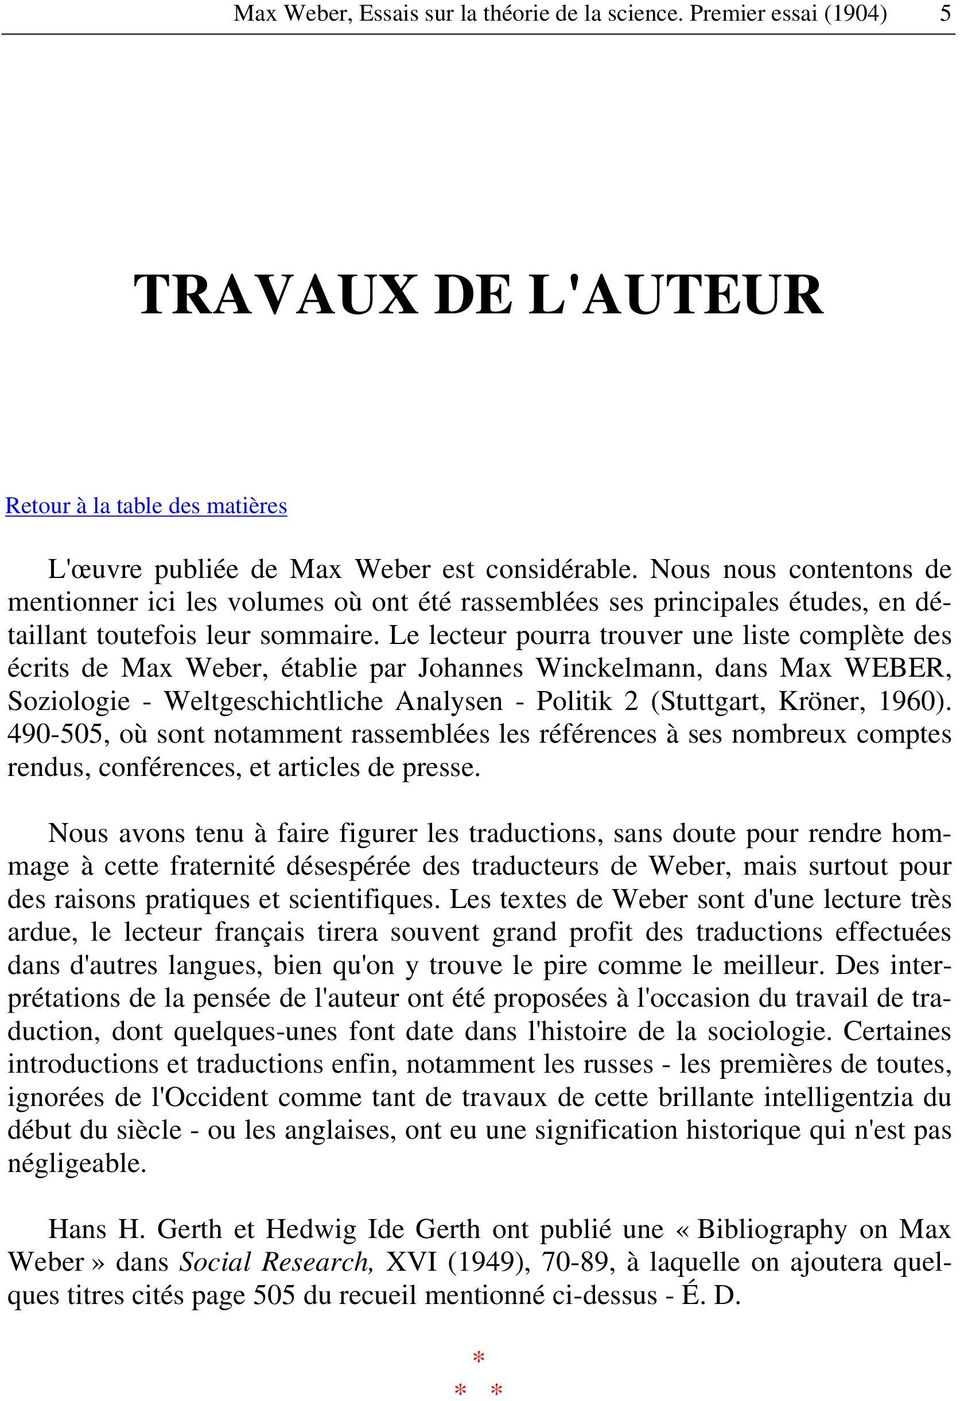 Le lecteur pourra trouver une liste complète des écrits de Max Weber, établie par Johannes Winckelmann, dans Max WEBER, Soziologie - Weltgeschichtliche Analysen - Politik 2 (Stuttgart, Kröner, 1960).